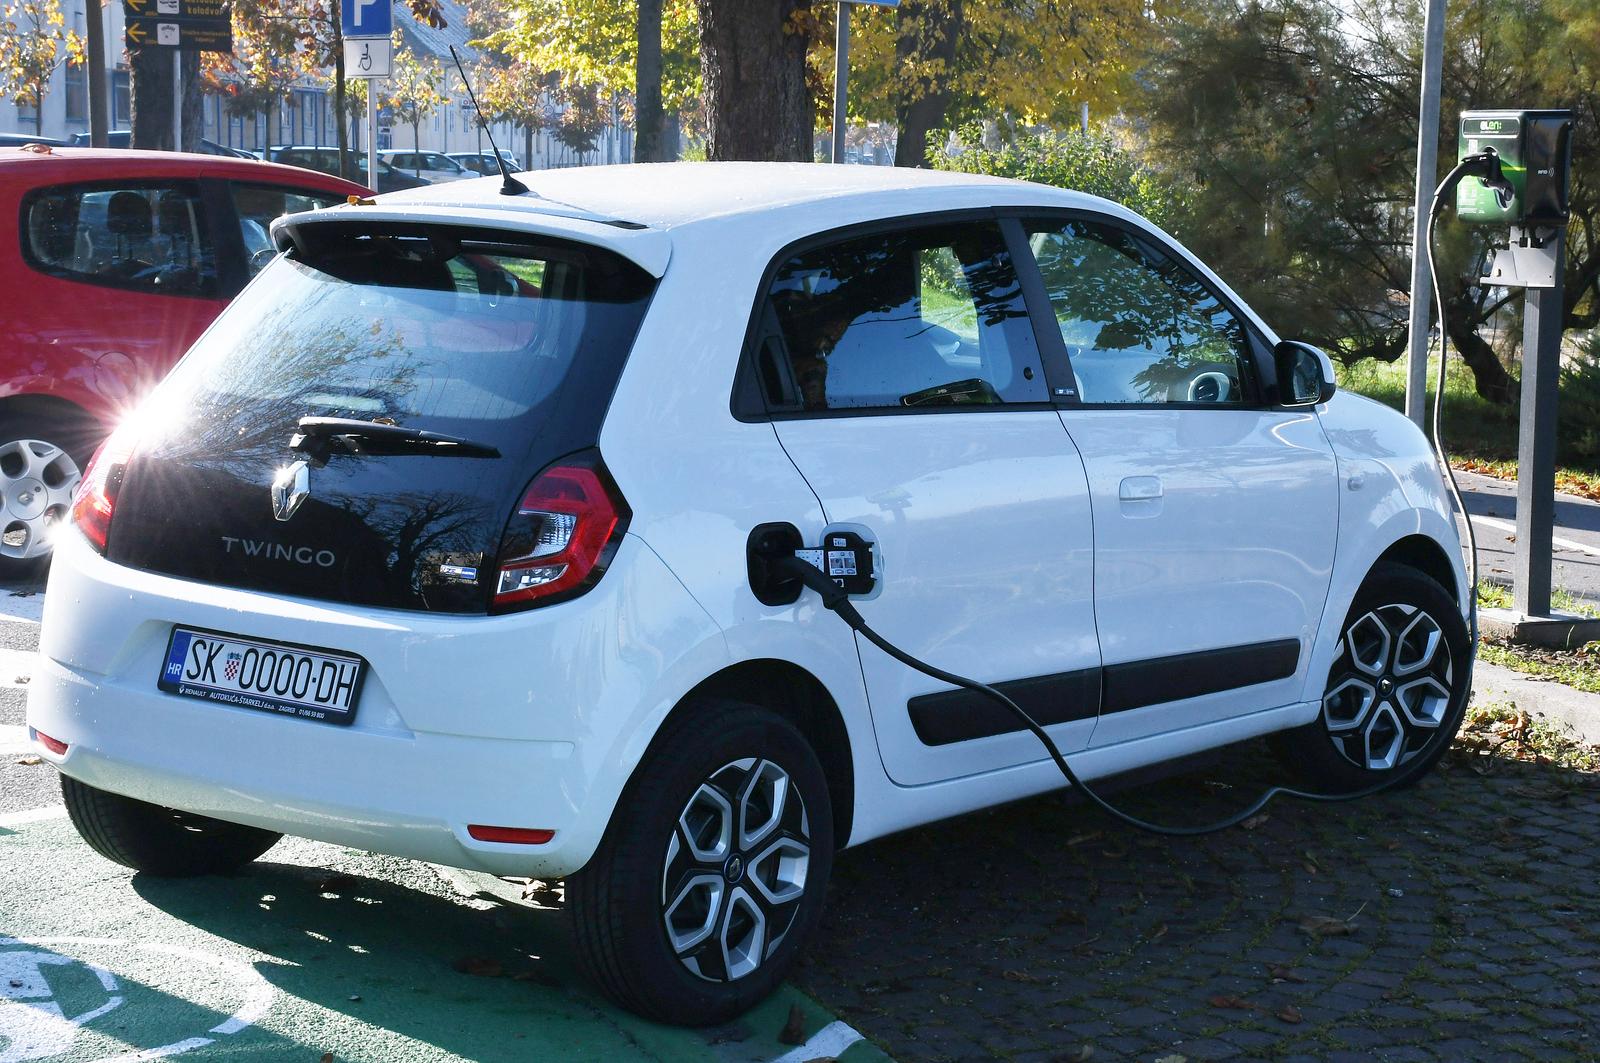 25.10.2021., Sisak - Vlasnici elektricnih automobila odnedavno mogu baterije svojih automobila napuniti na dva nova mjesta za punjenje u Rimskoj ulici. Photo: Nikola Cutuk/PIXSELL